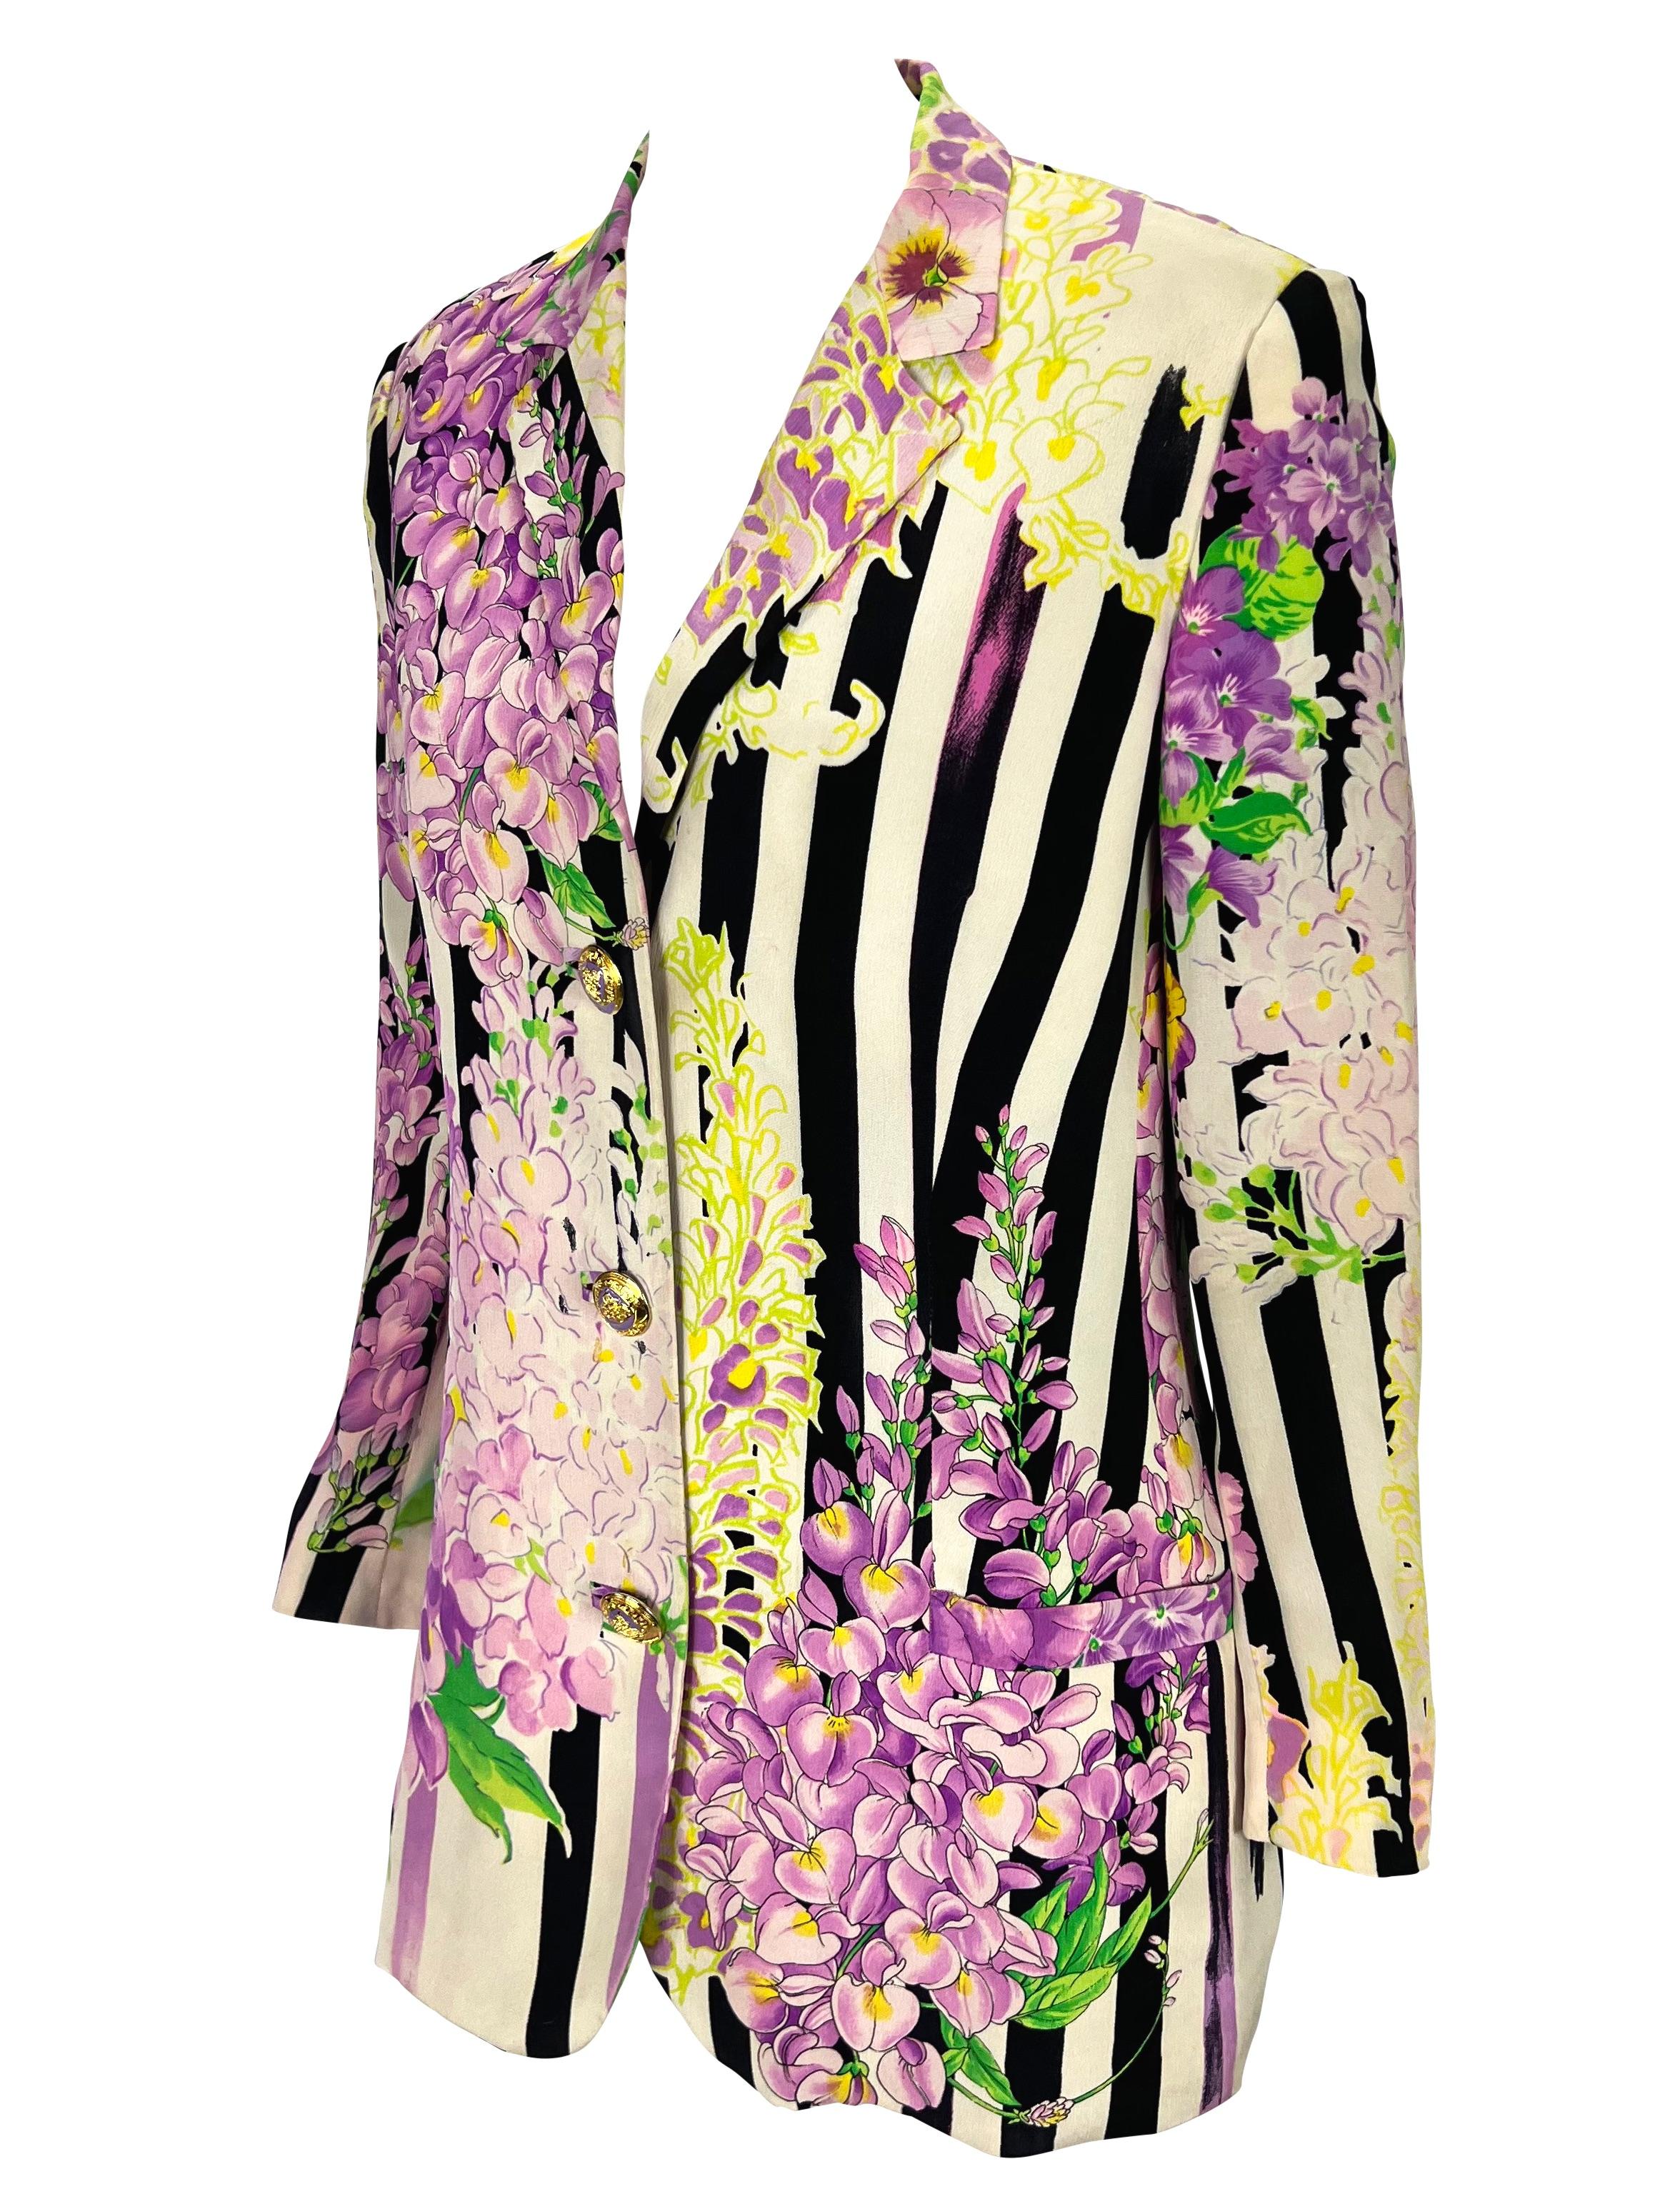 Wir präsentieren einen wunderschönen gestreiften und geblümten Gianni Versace Blazer, entworfen von Gianni Versace. Dieser wunderschöne Blazer aus der Frühjahr/Sommer-Kollektion 1994 zeigt ein schwarz-weißes, vertikales Streifenmuster mit einem lila